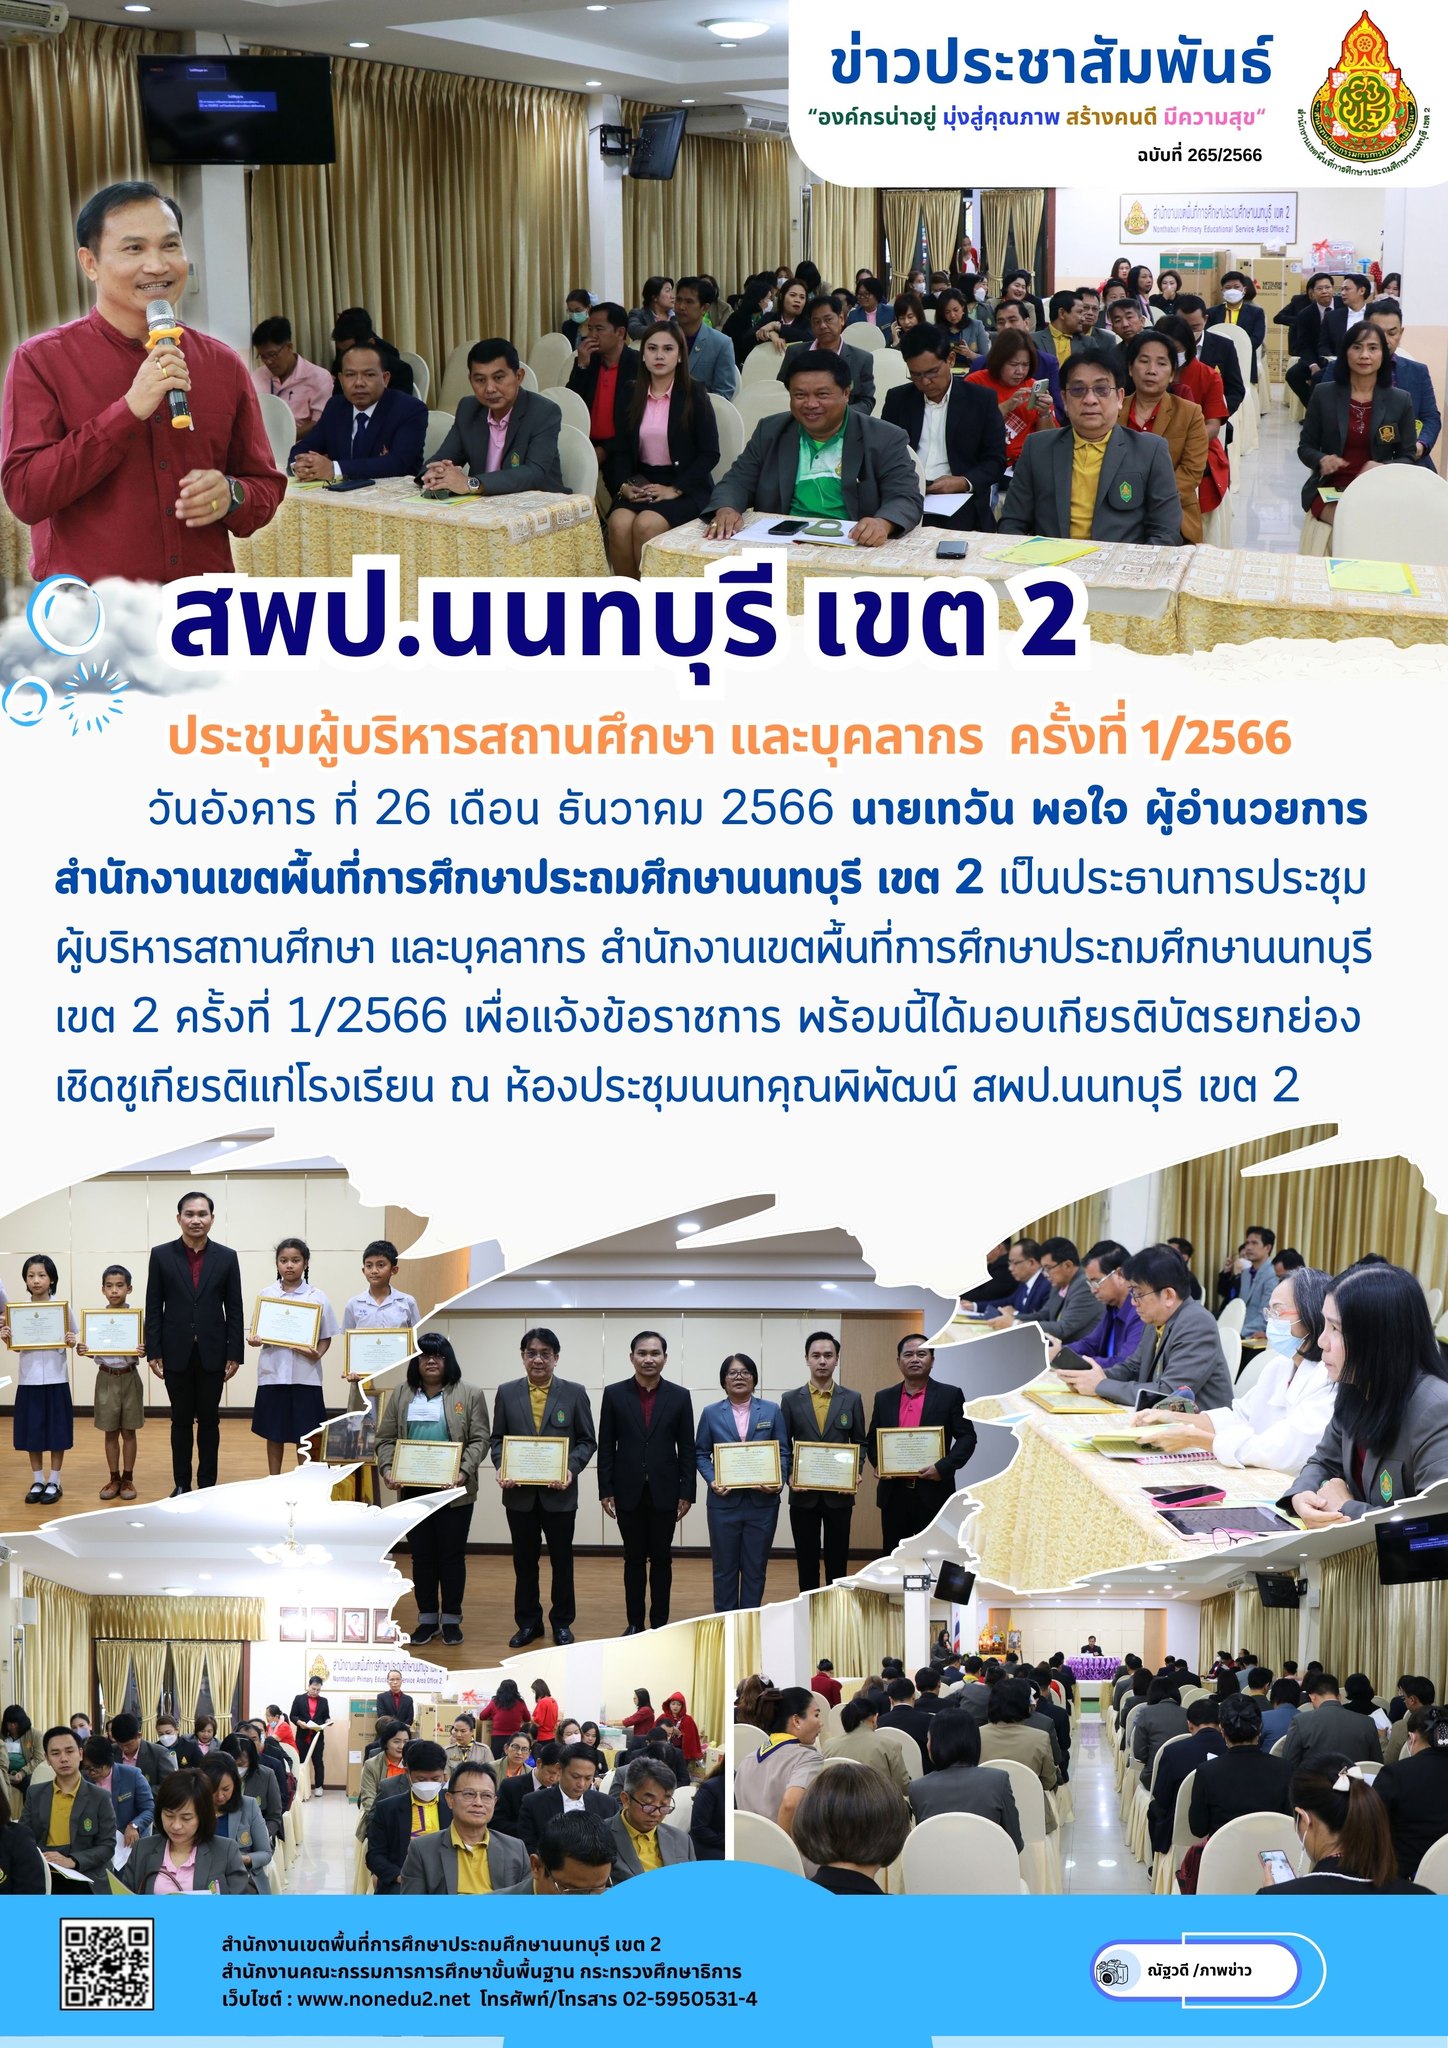 ประชุมผู้บริหารสถานศึกษา และบุคลากร สำนักงานเขตพื้นที่การศึกษาประถมศึกษานนทบุรี เขต 2 ครั้งที่ 1/2566